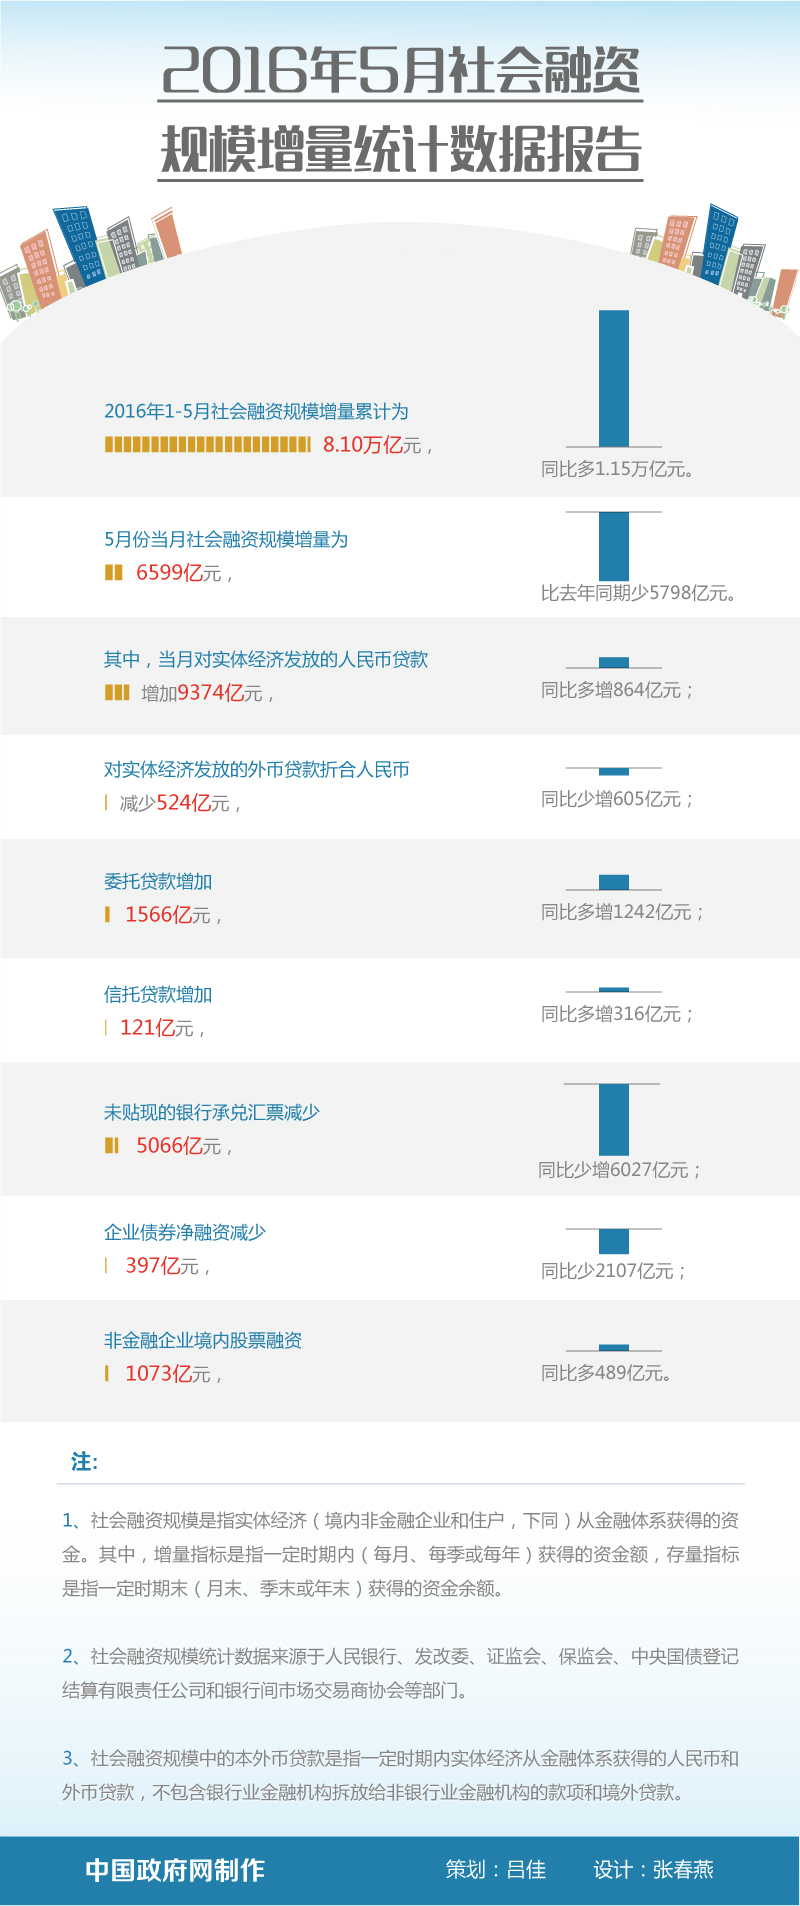 图解 16年5月社会融资规模增量统计数据报告 图解图表 中国政府网